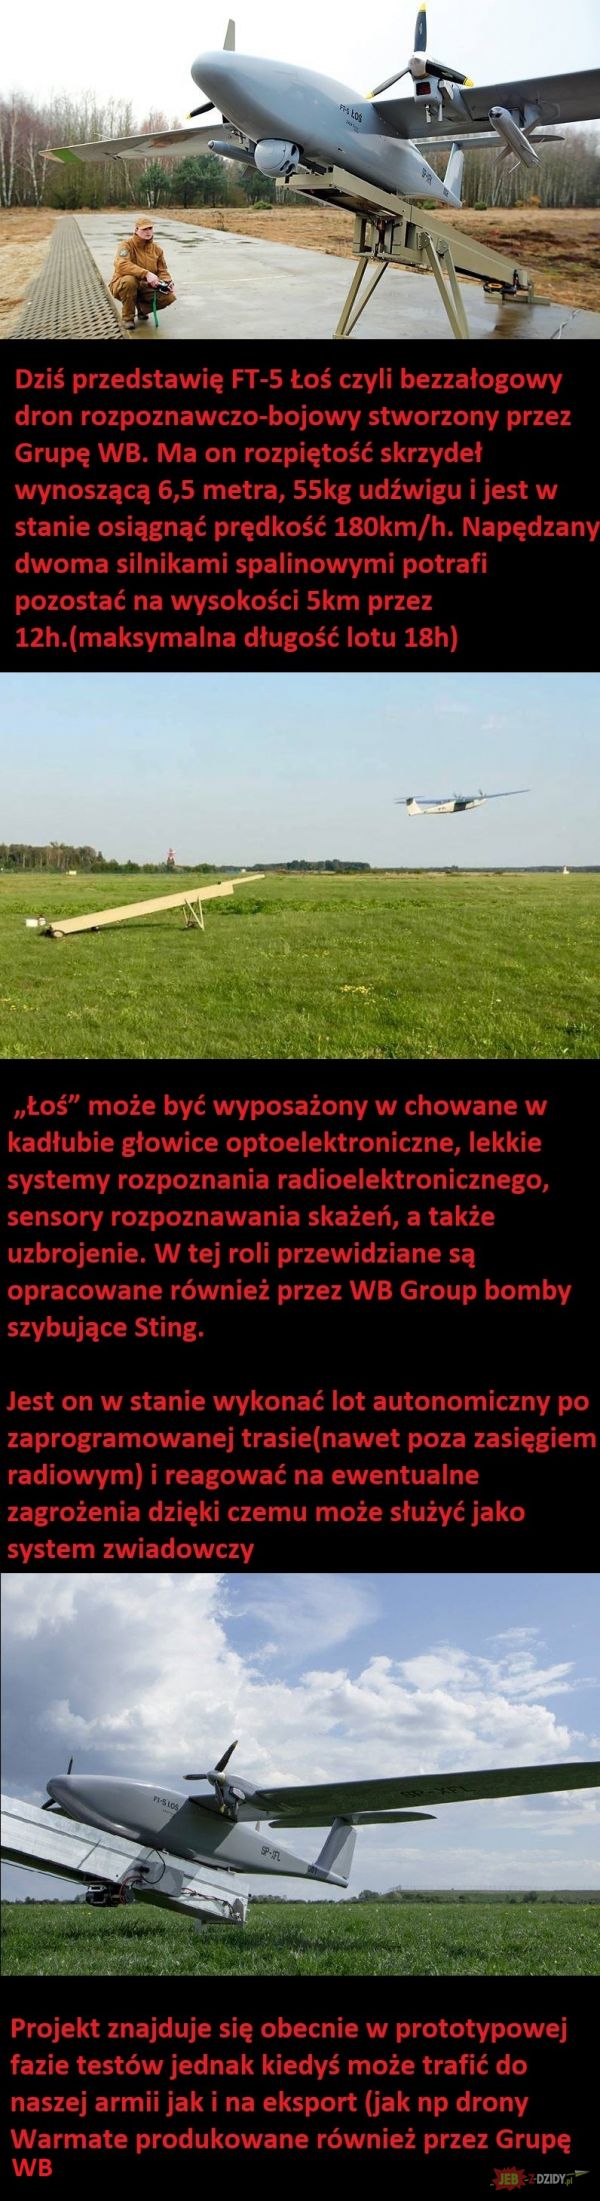 Dron rozpoznawczo-bojowy FT-5 Łoś